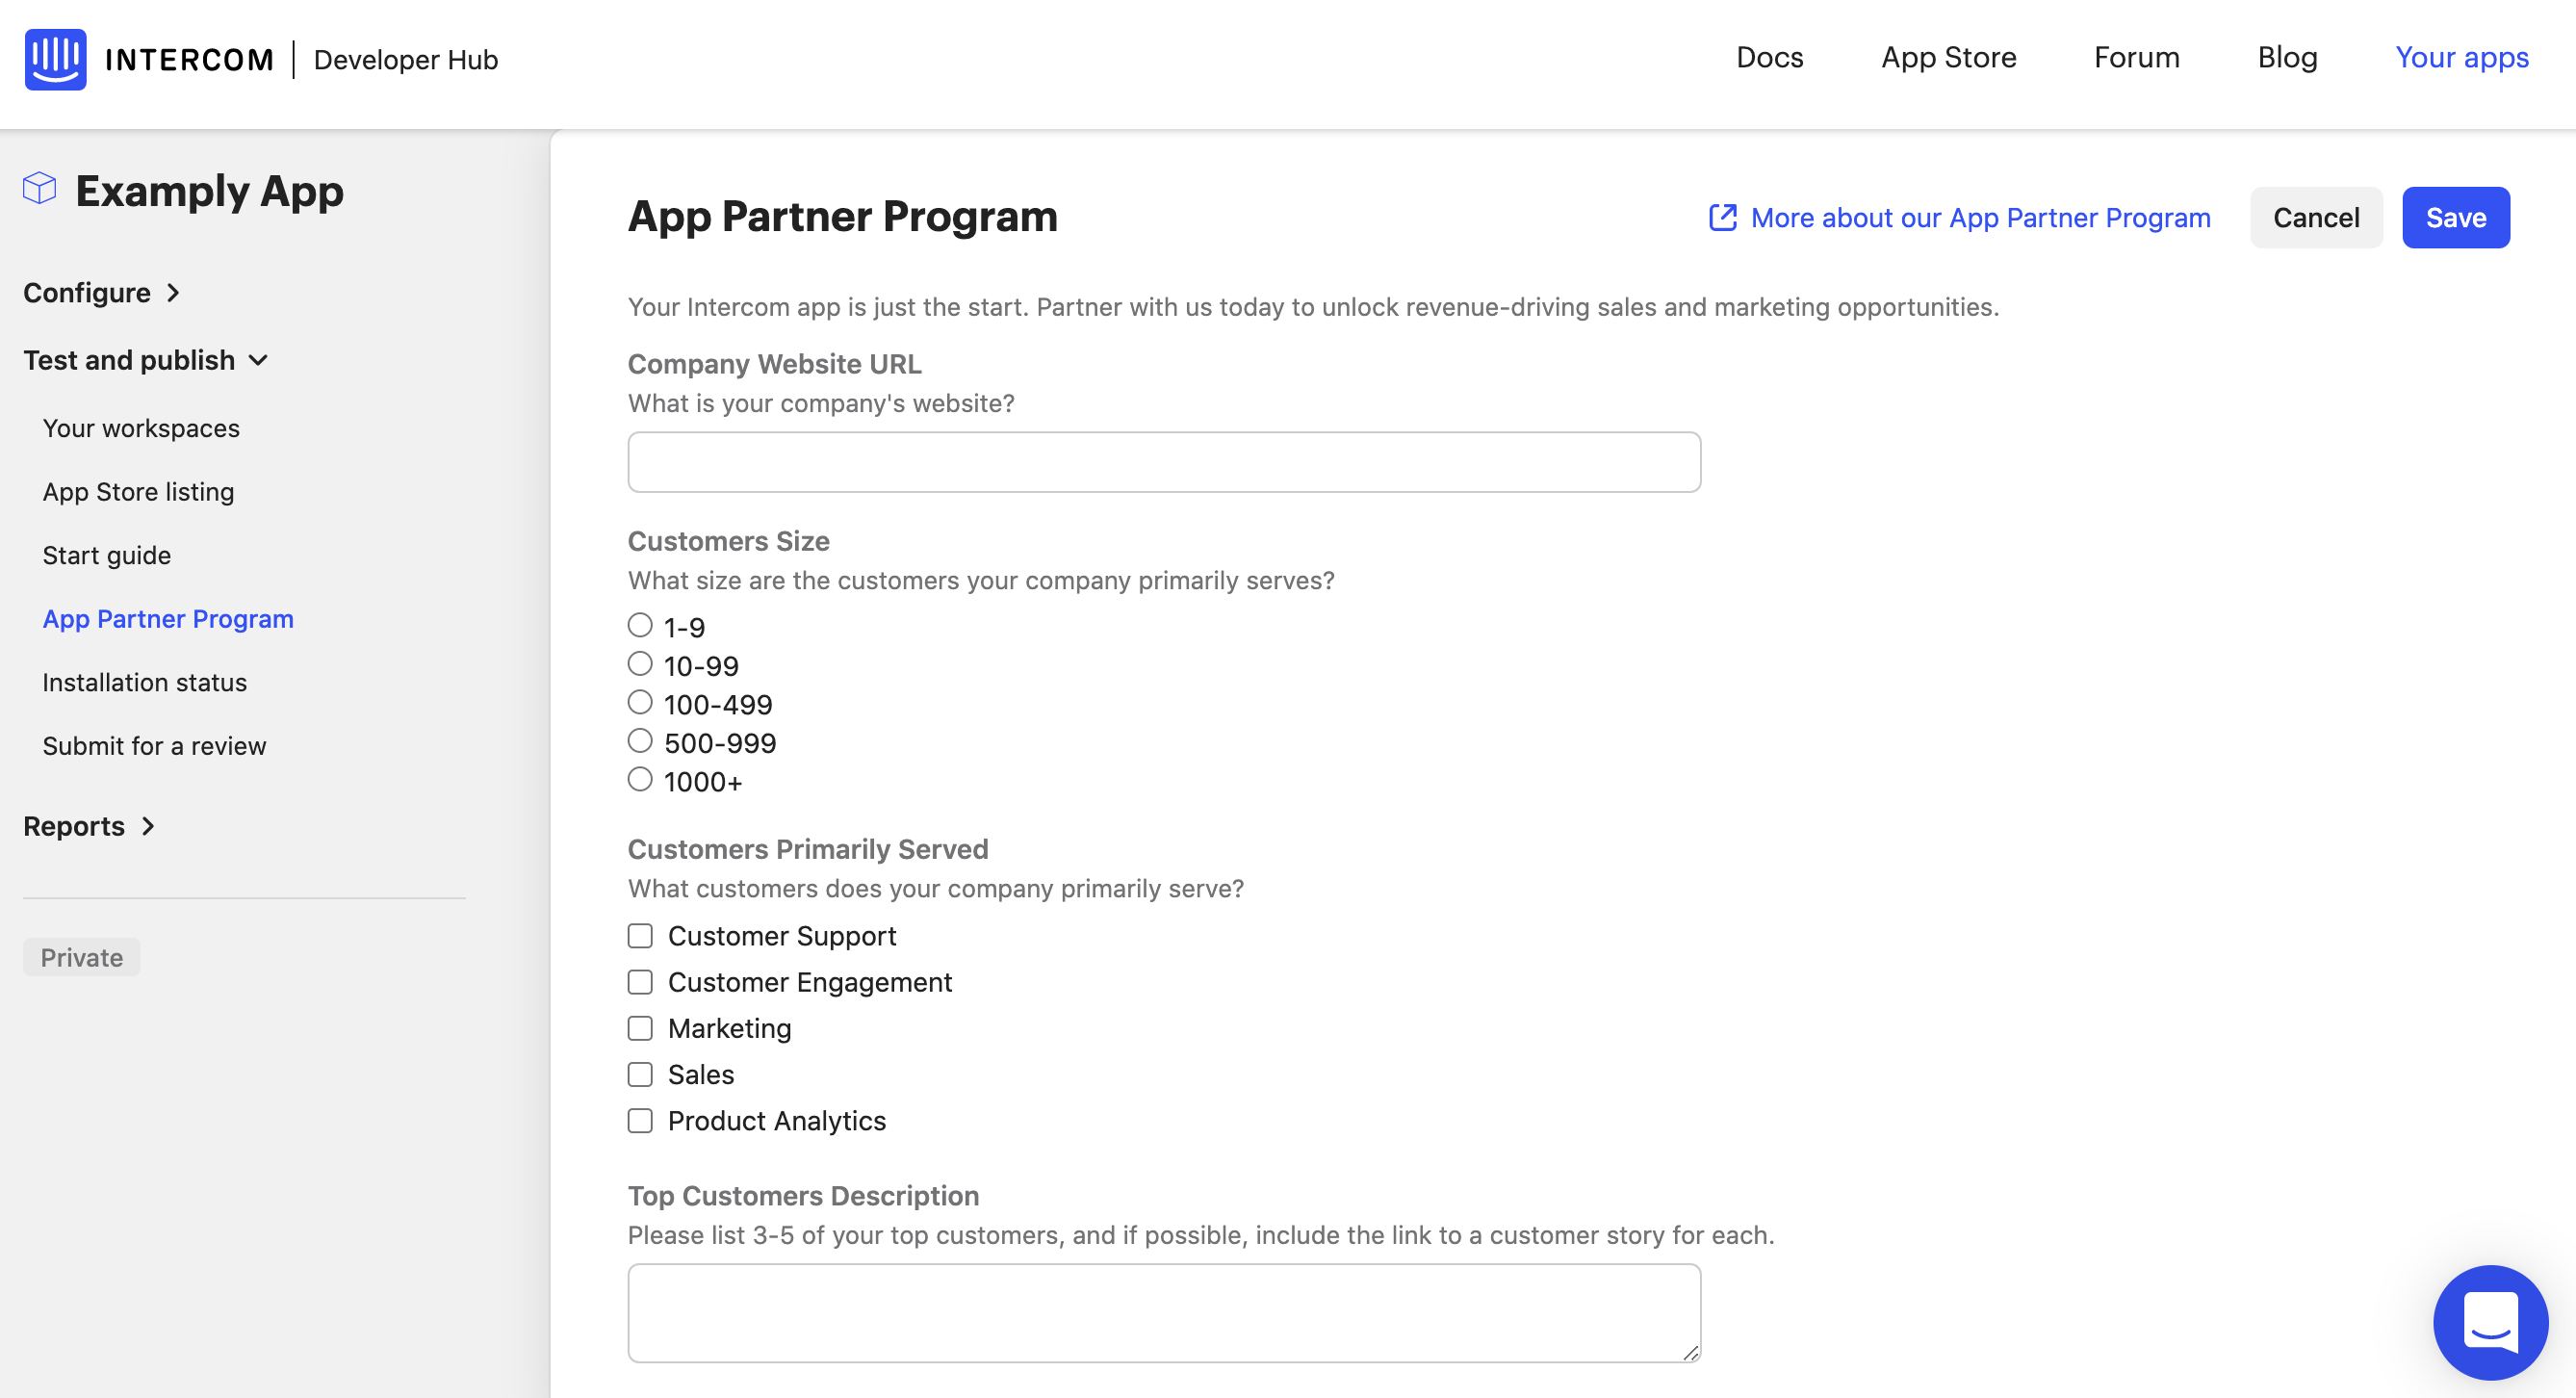 App Partner Program Info